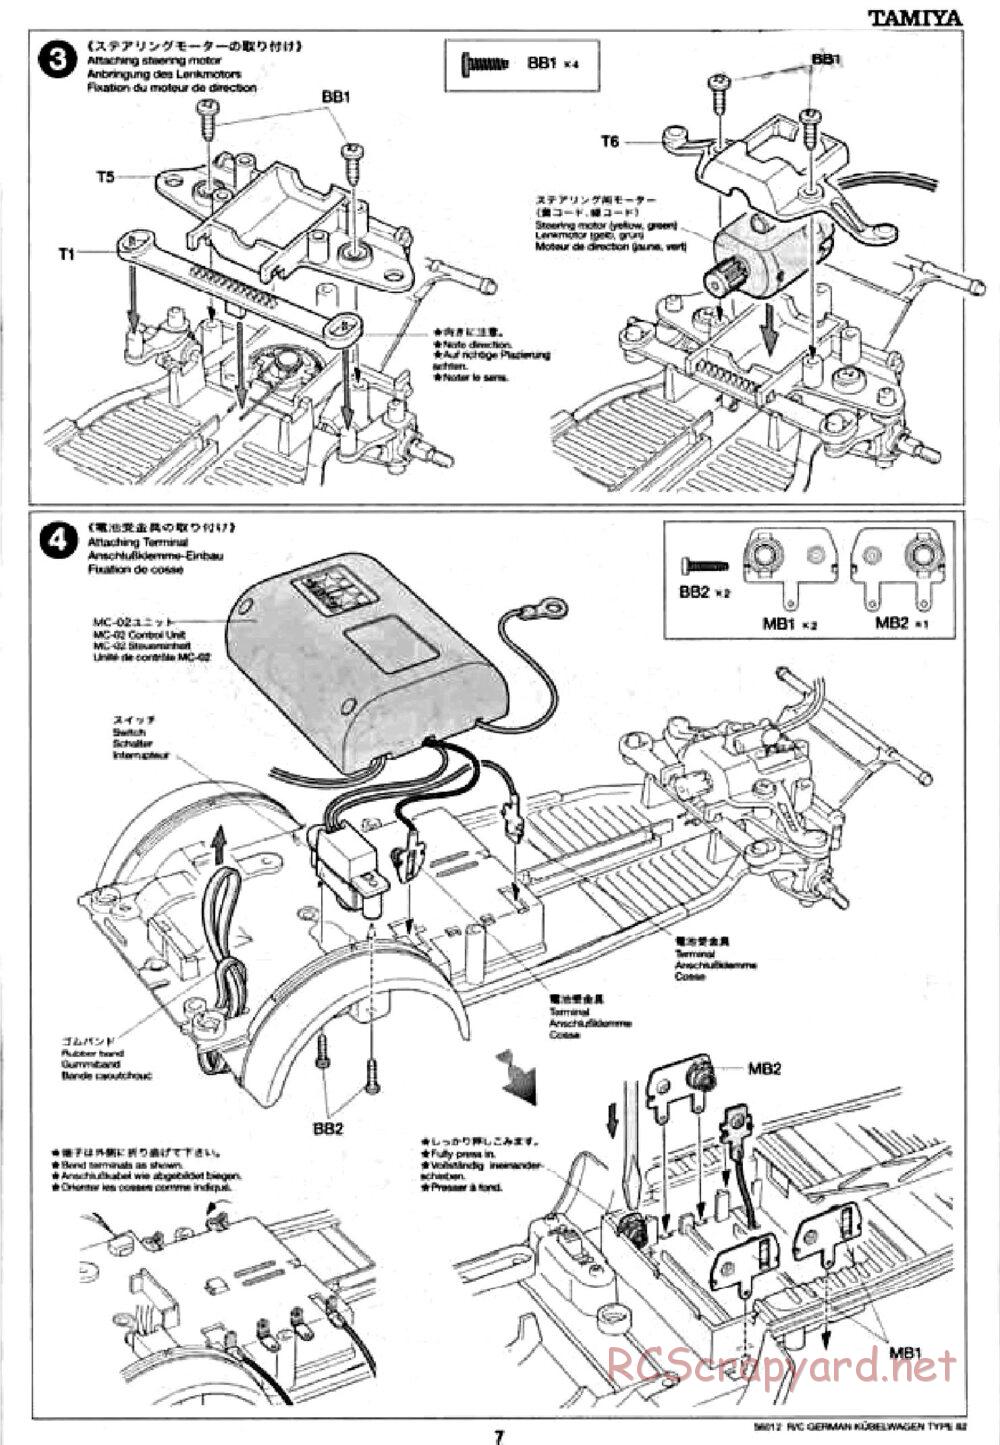 Tamiya - Kubelwagen Type 82 Chassis - Manual - Page 7